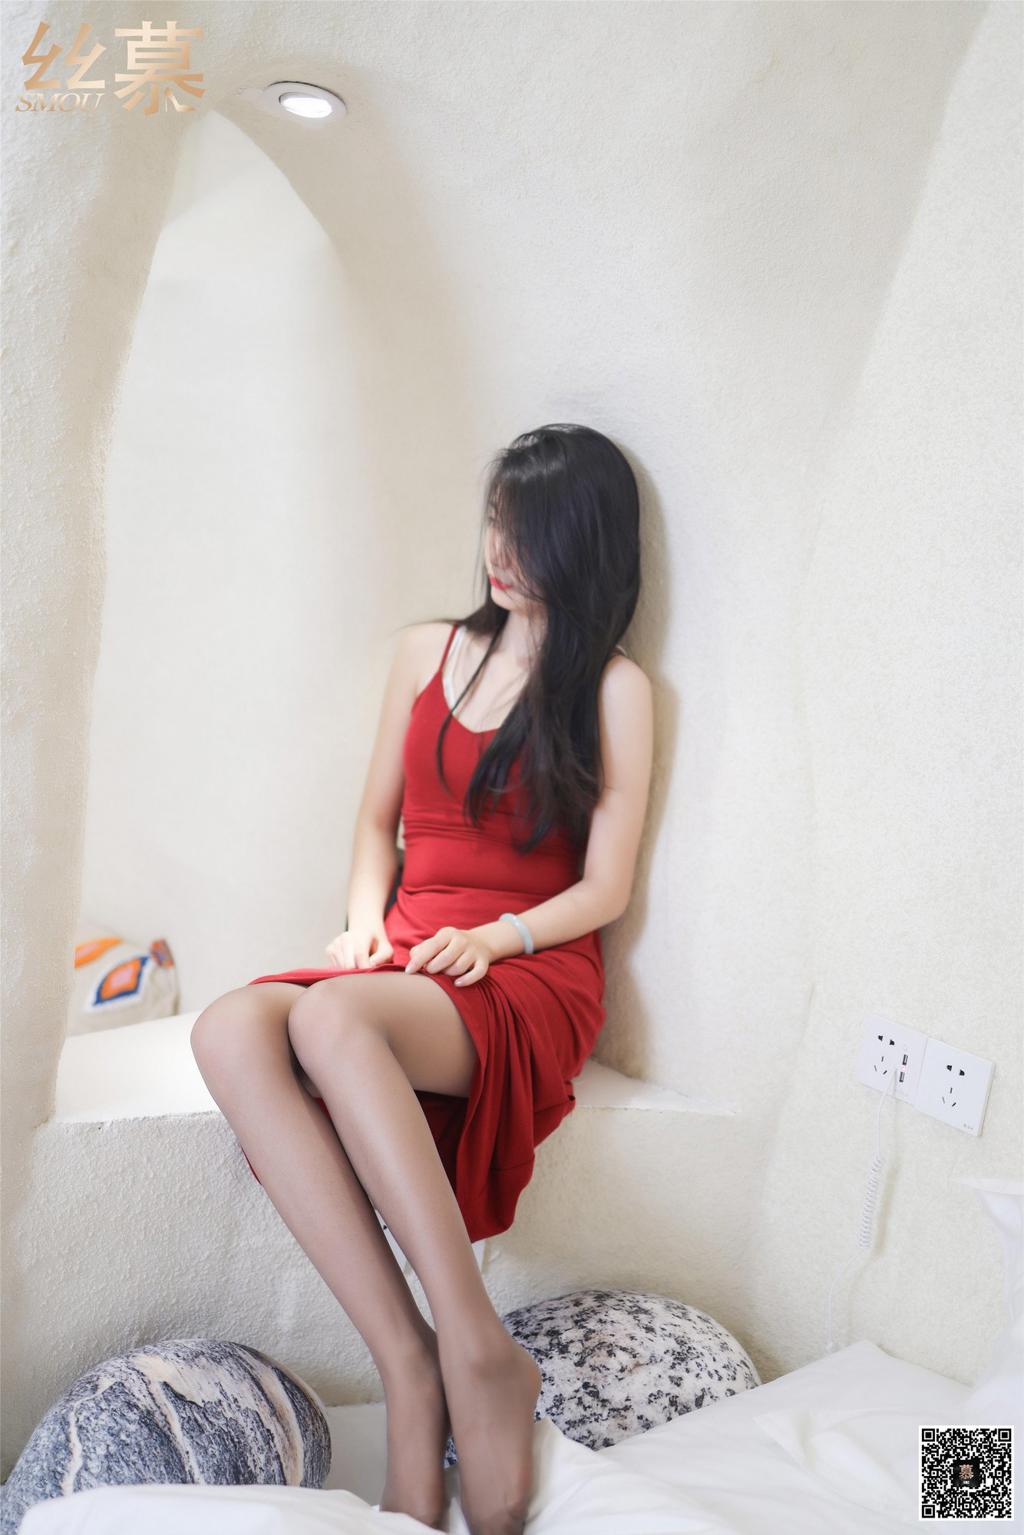 [丝慕SMOU] SM.261可儿《高贵的红裙惹人温柔》